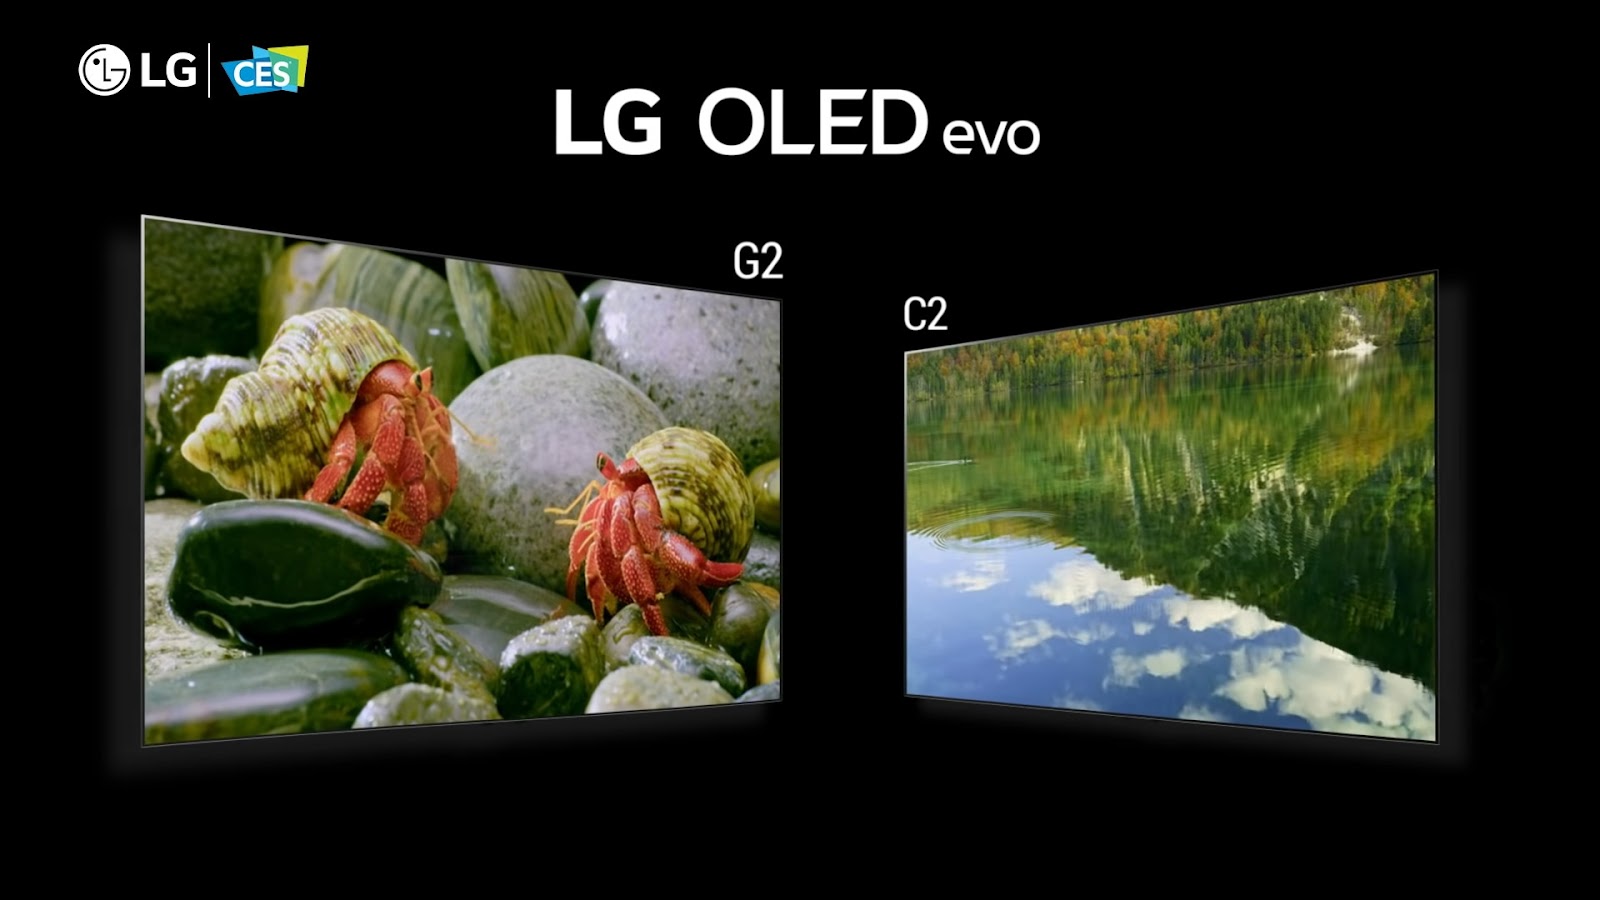 LG OLED C2 and LG OLED G2 TVs